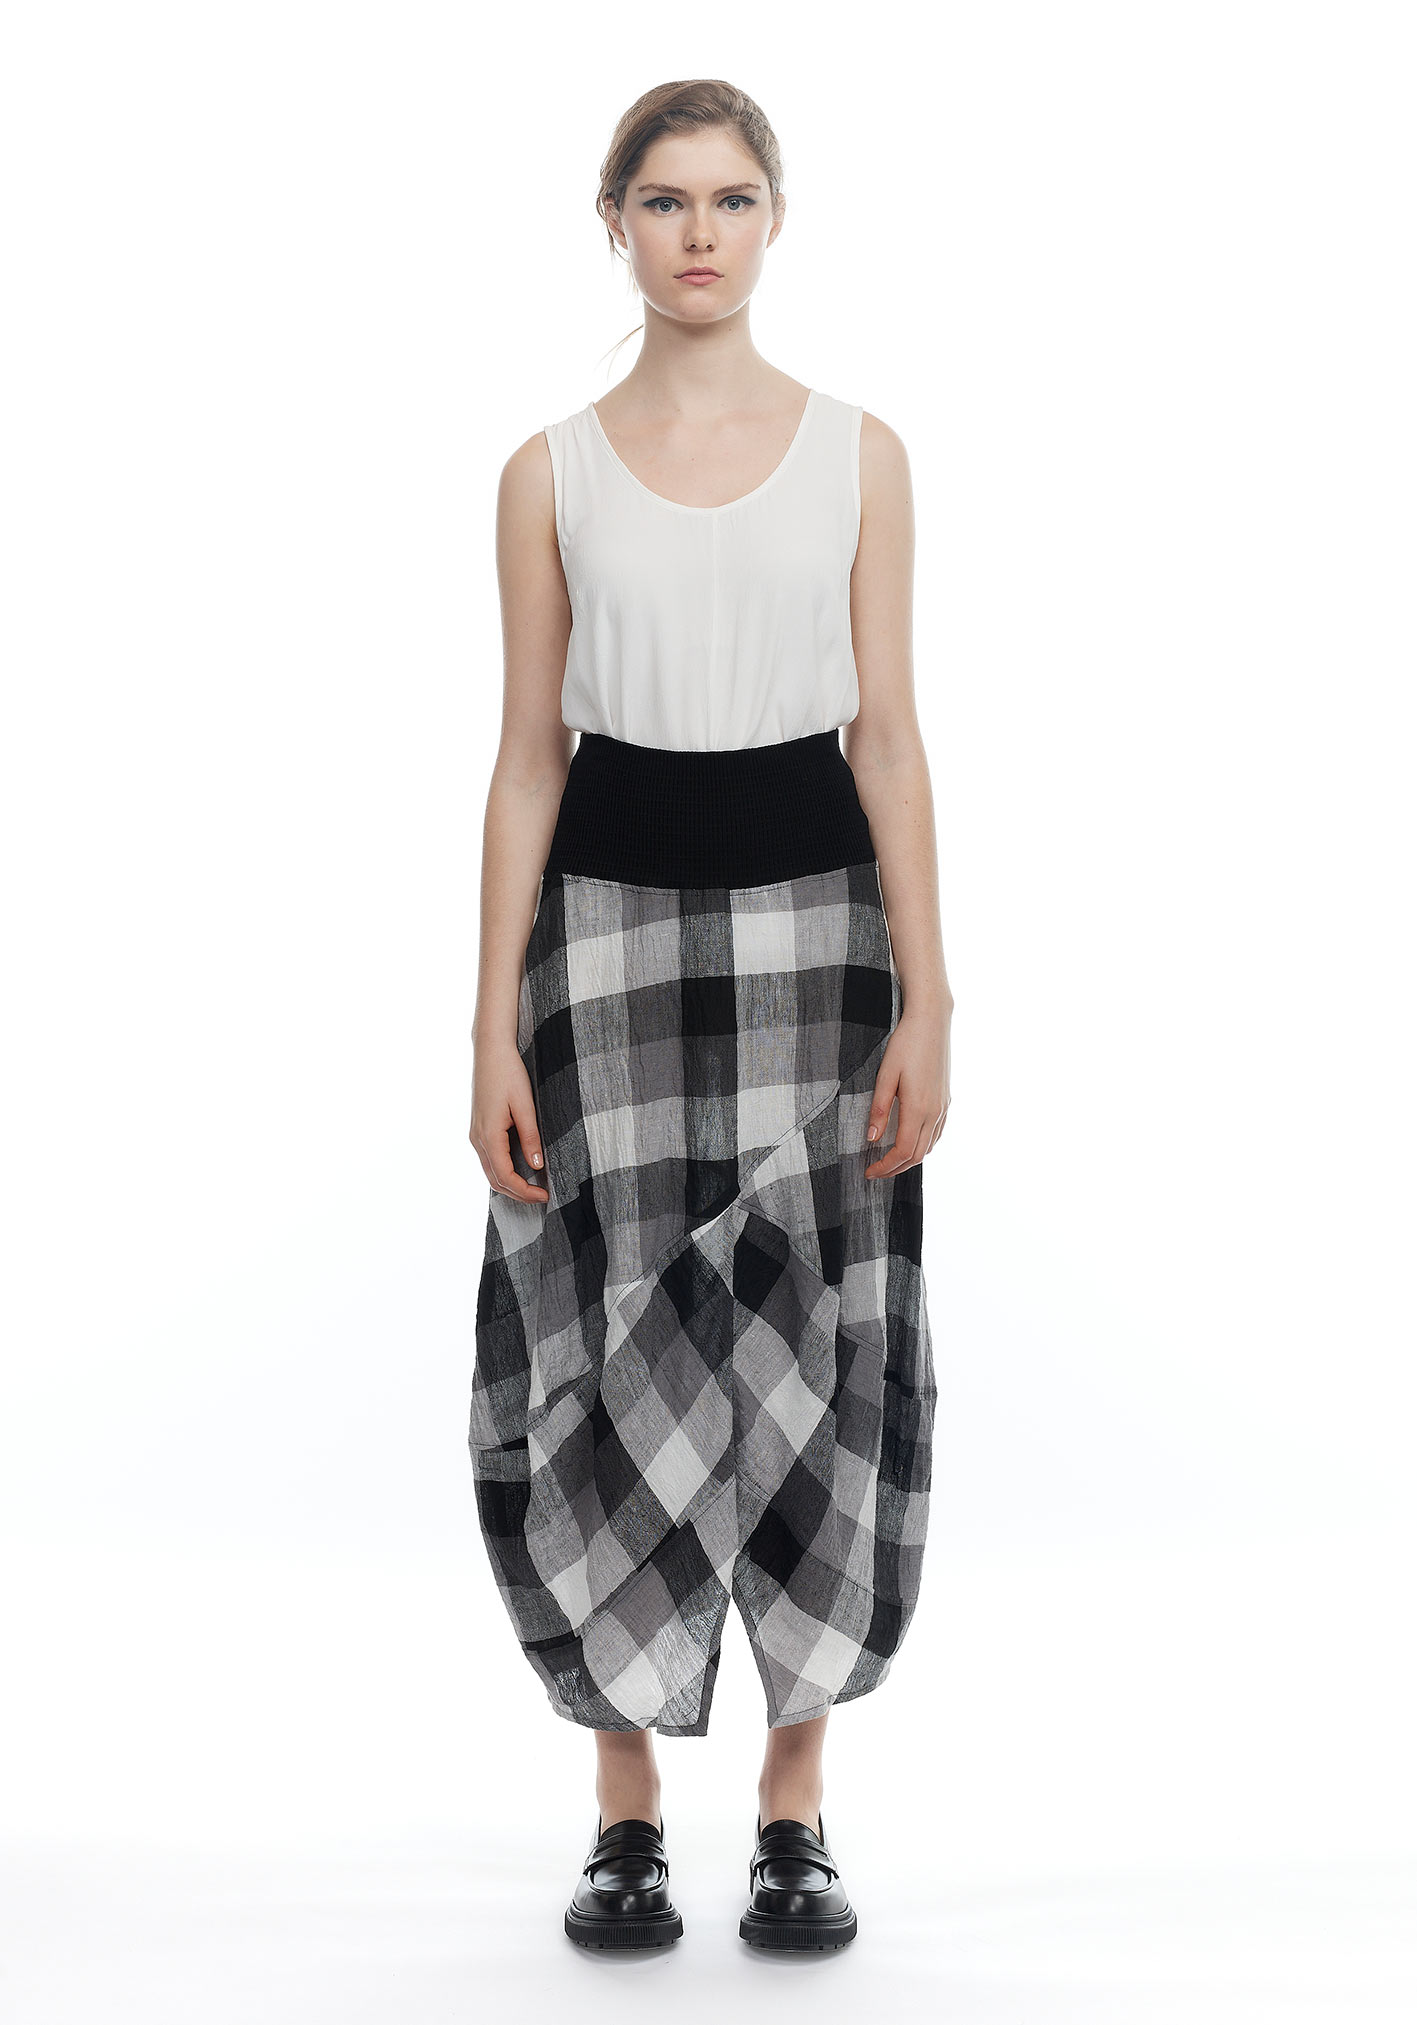 buy the latest Criss Cross Skirt online